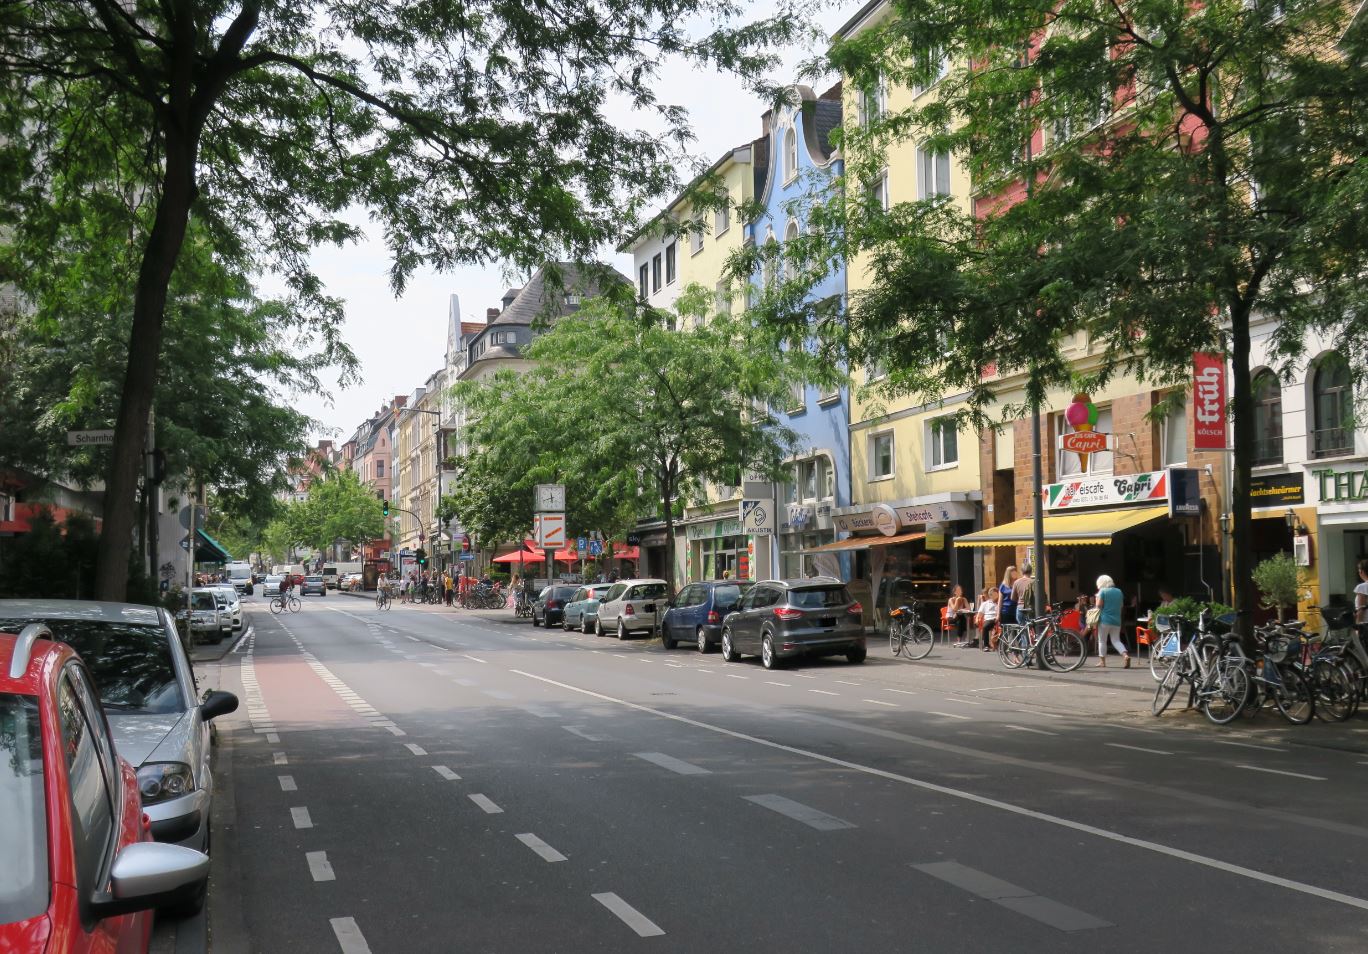 Auf dem Bild ist die Neusser Straße zu sehen. Es gibt parkende Autos und Menschen, die zu Fuß gehen oder mit dem Fahrrad fahren.